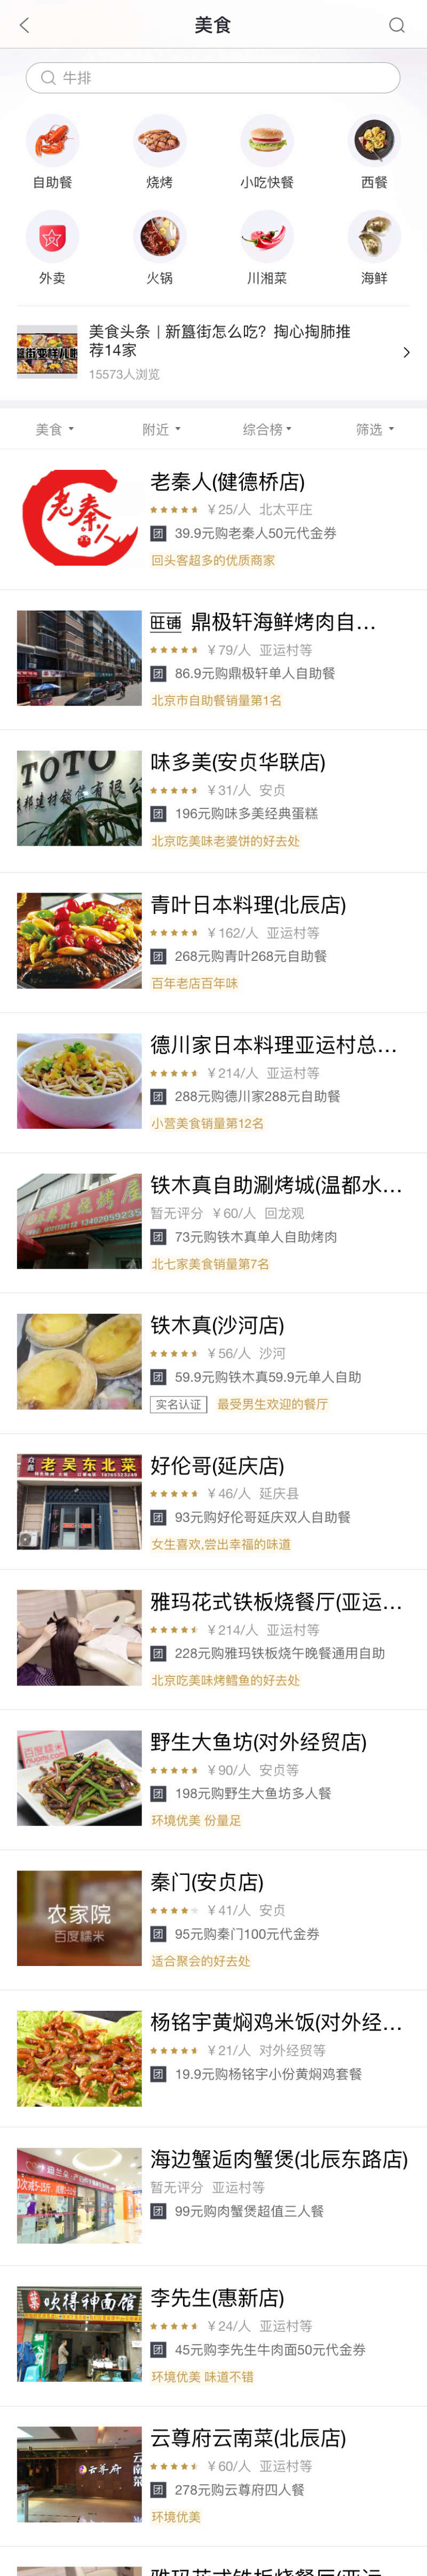 食物推荐应用列表页面模板插图